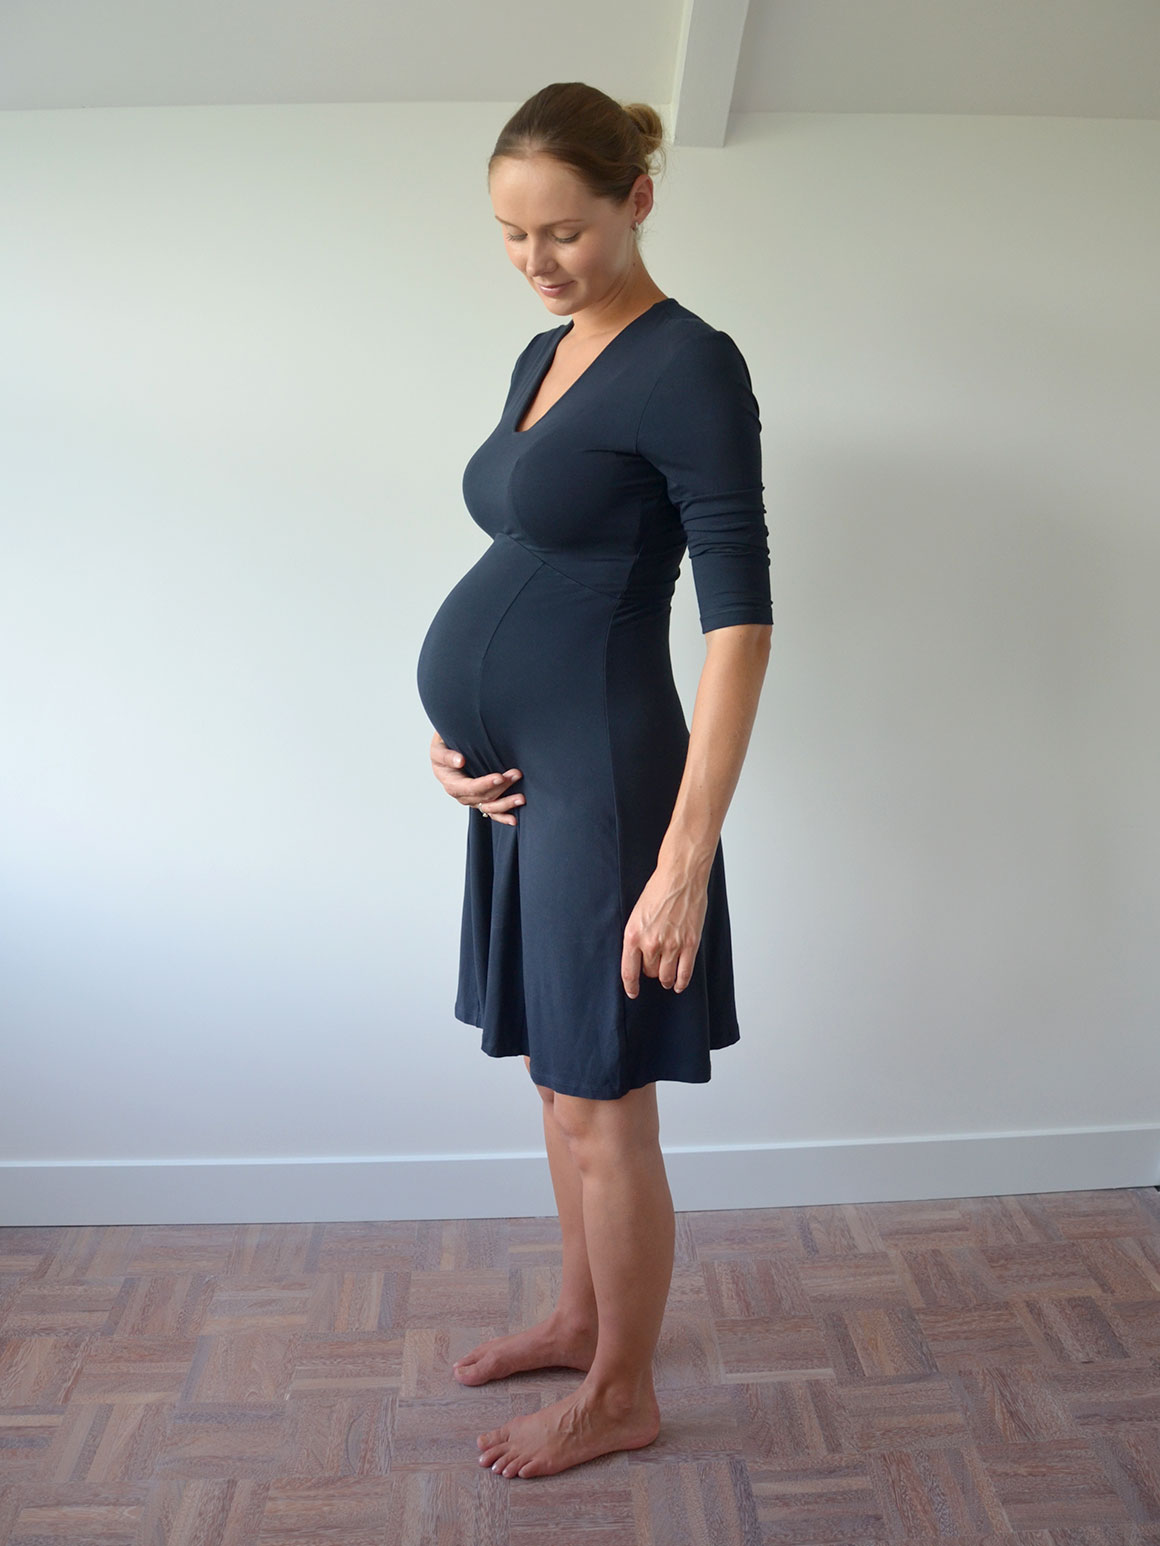 Zwangerschapsupdate #21: De bevalling